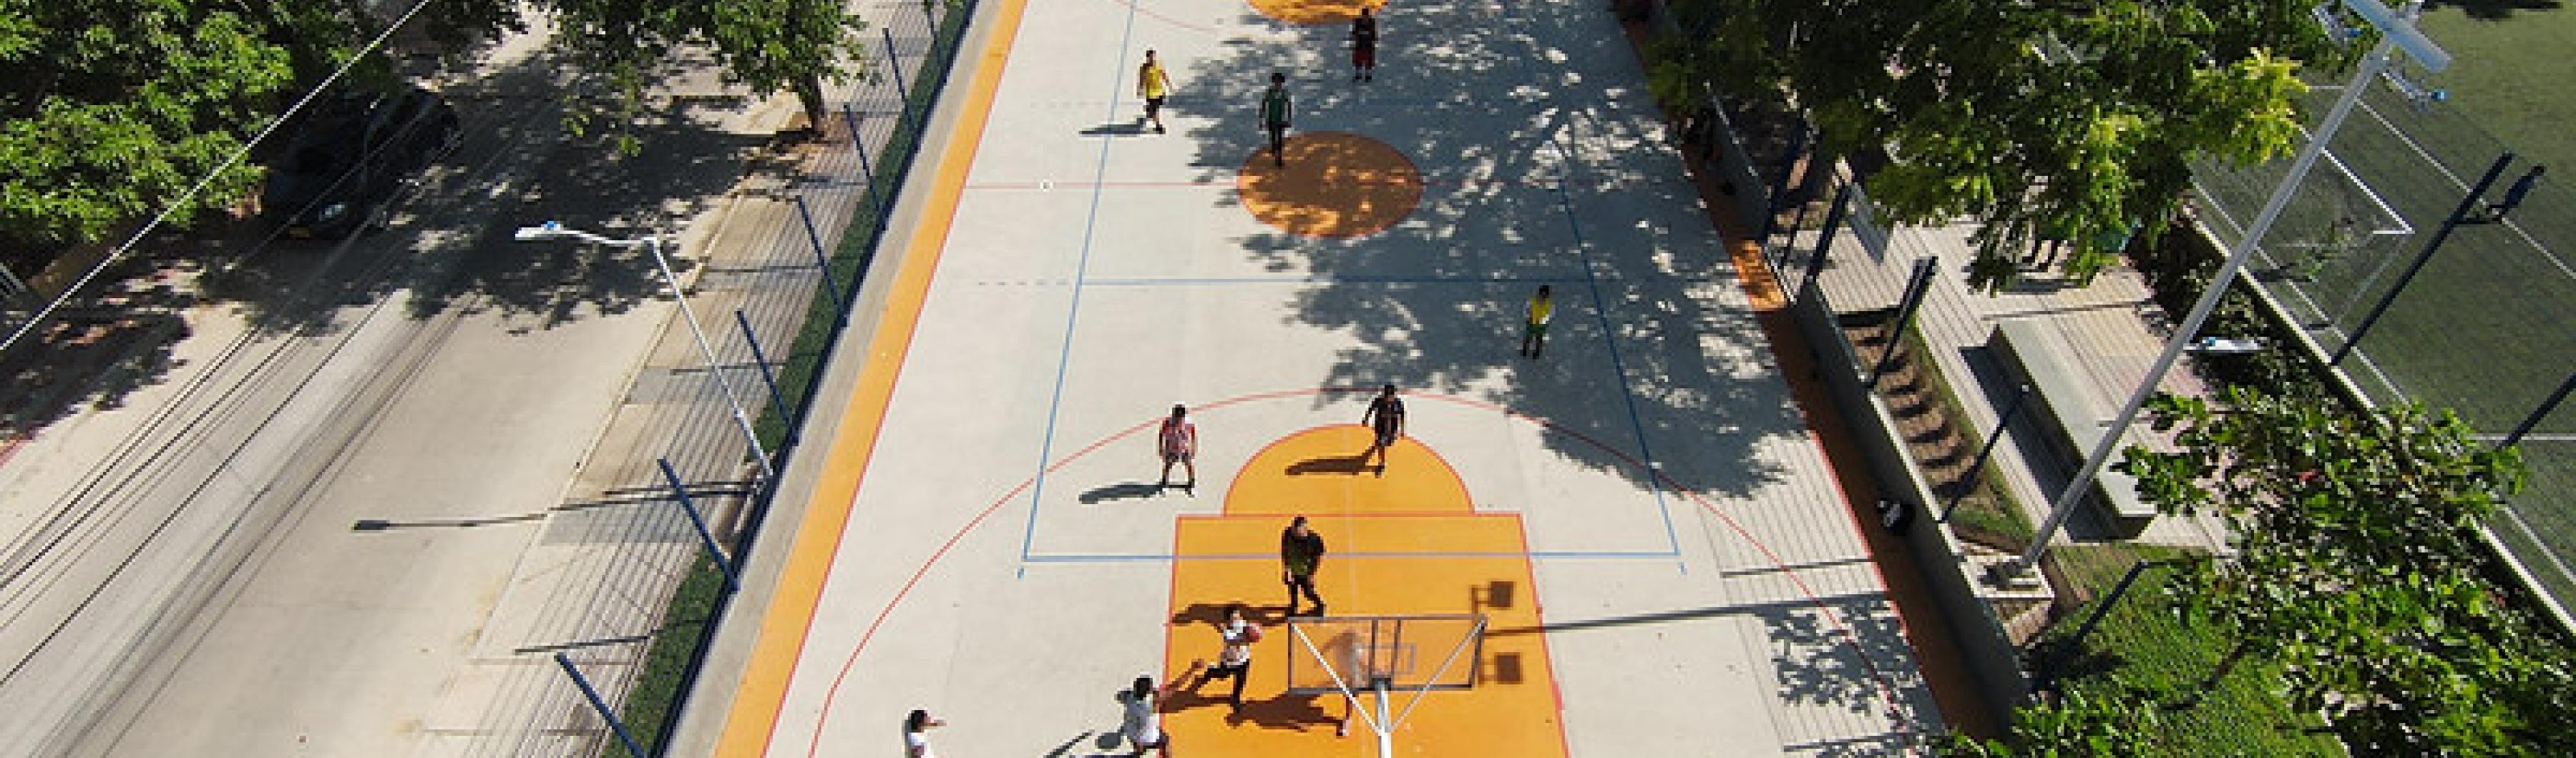 Vista aérea de una cancha de baloncesto rodeada de árboles en Barranquilla, Colombia.